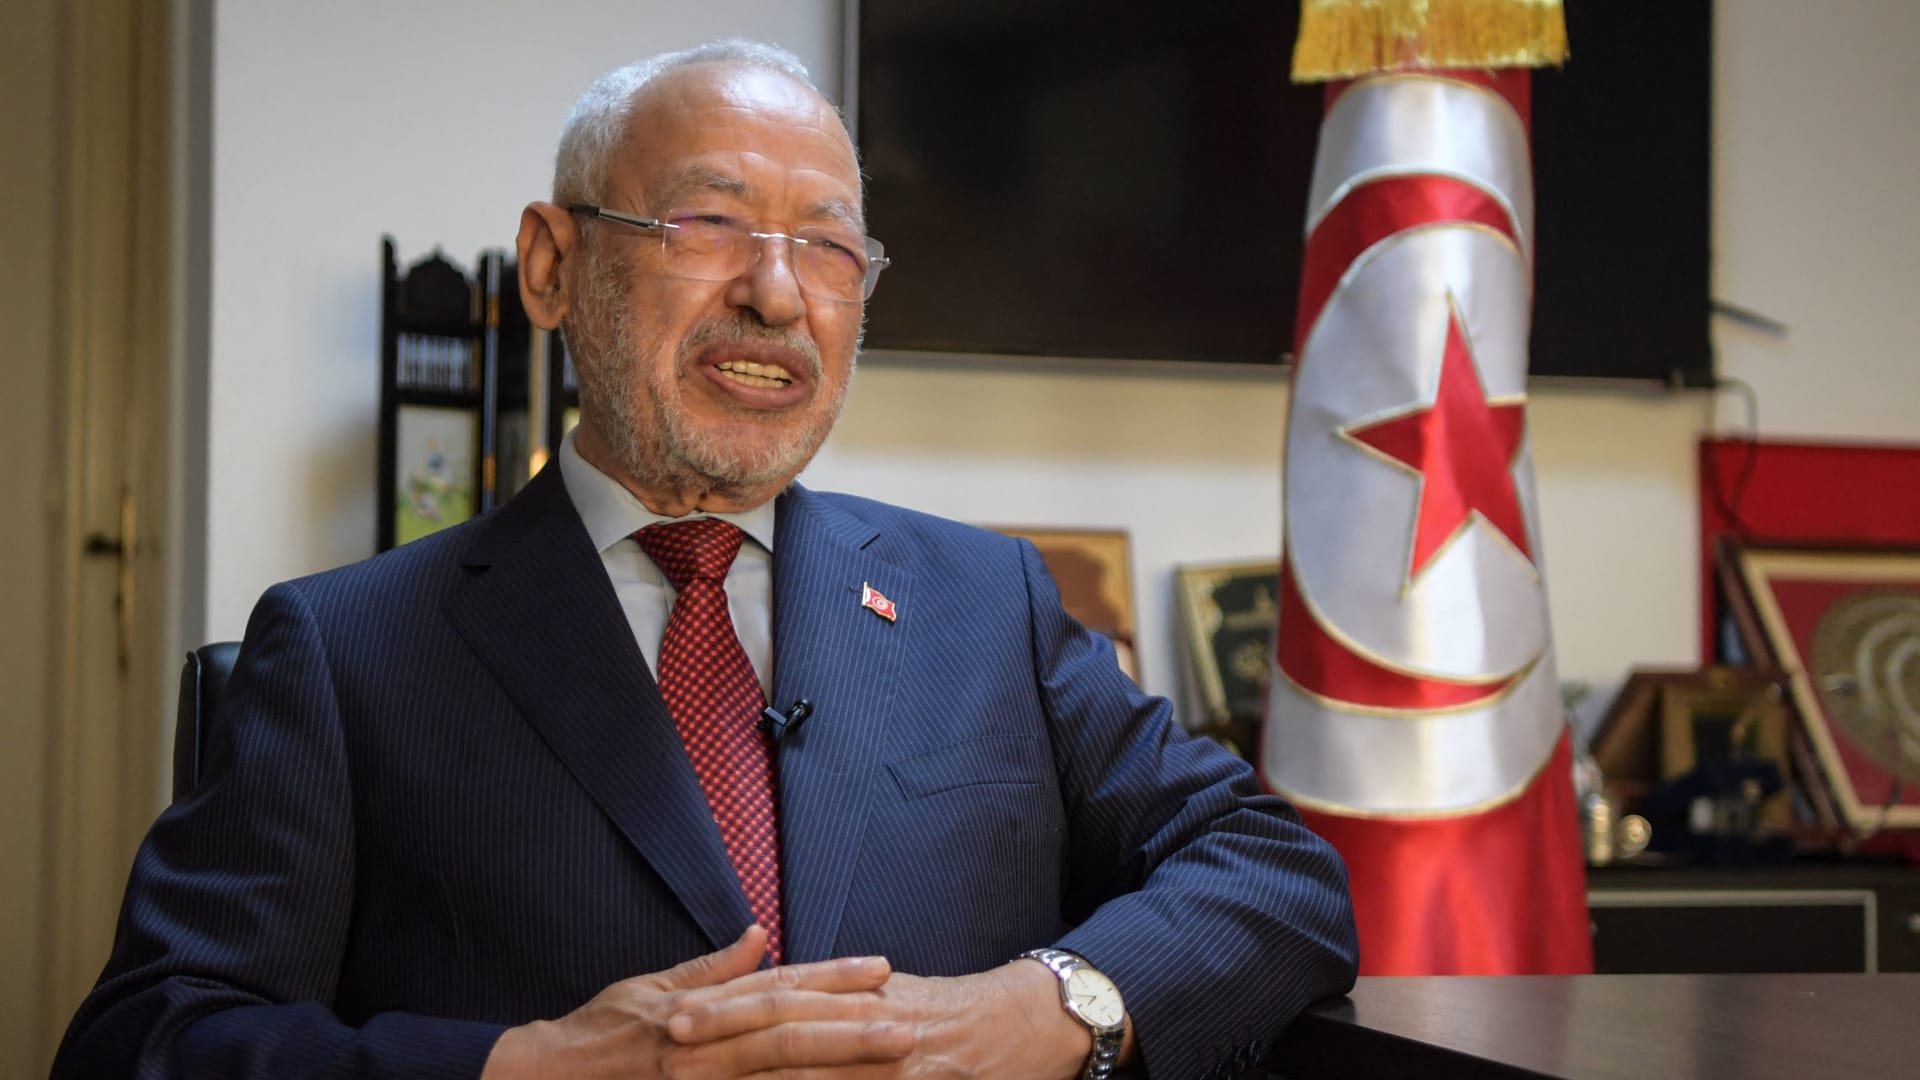 النهضة التونسية ترفض "بشكل قاطع" قرار سعيد بشأن المجلس القضاء الأعلى